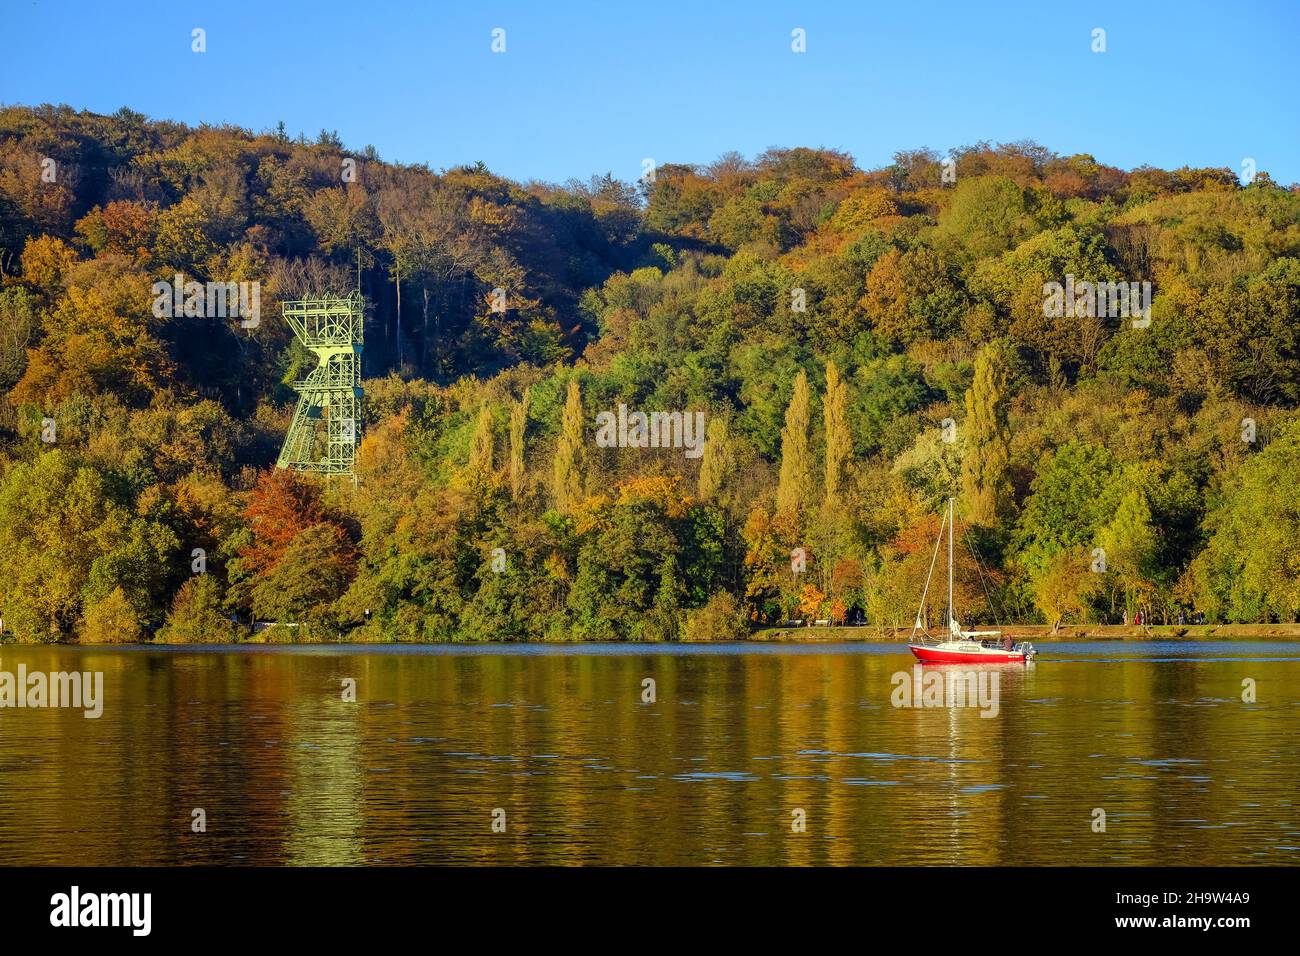 '24.10.2021, Germany, North Rhine-Westphalia, Essen - Golden autumn at Lake Baldeney. Sailboat in front of the former coal mine Carl Funke. Carl Funke Stock Photo